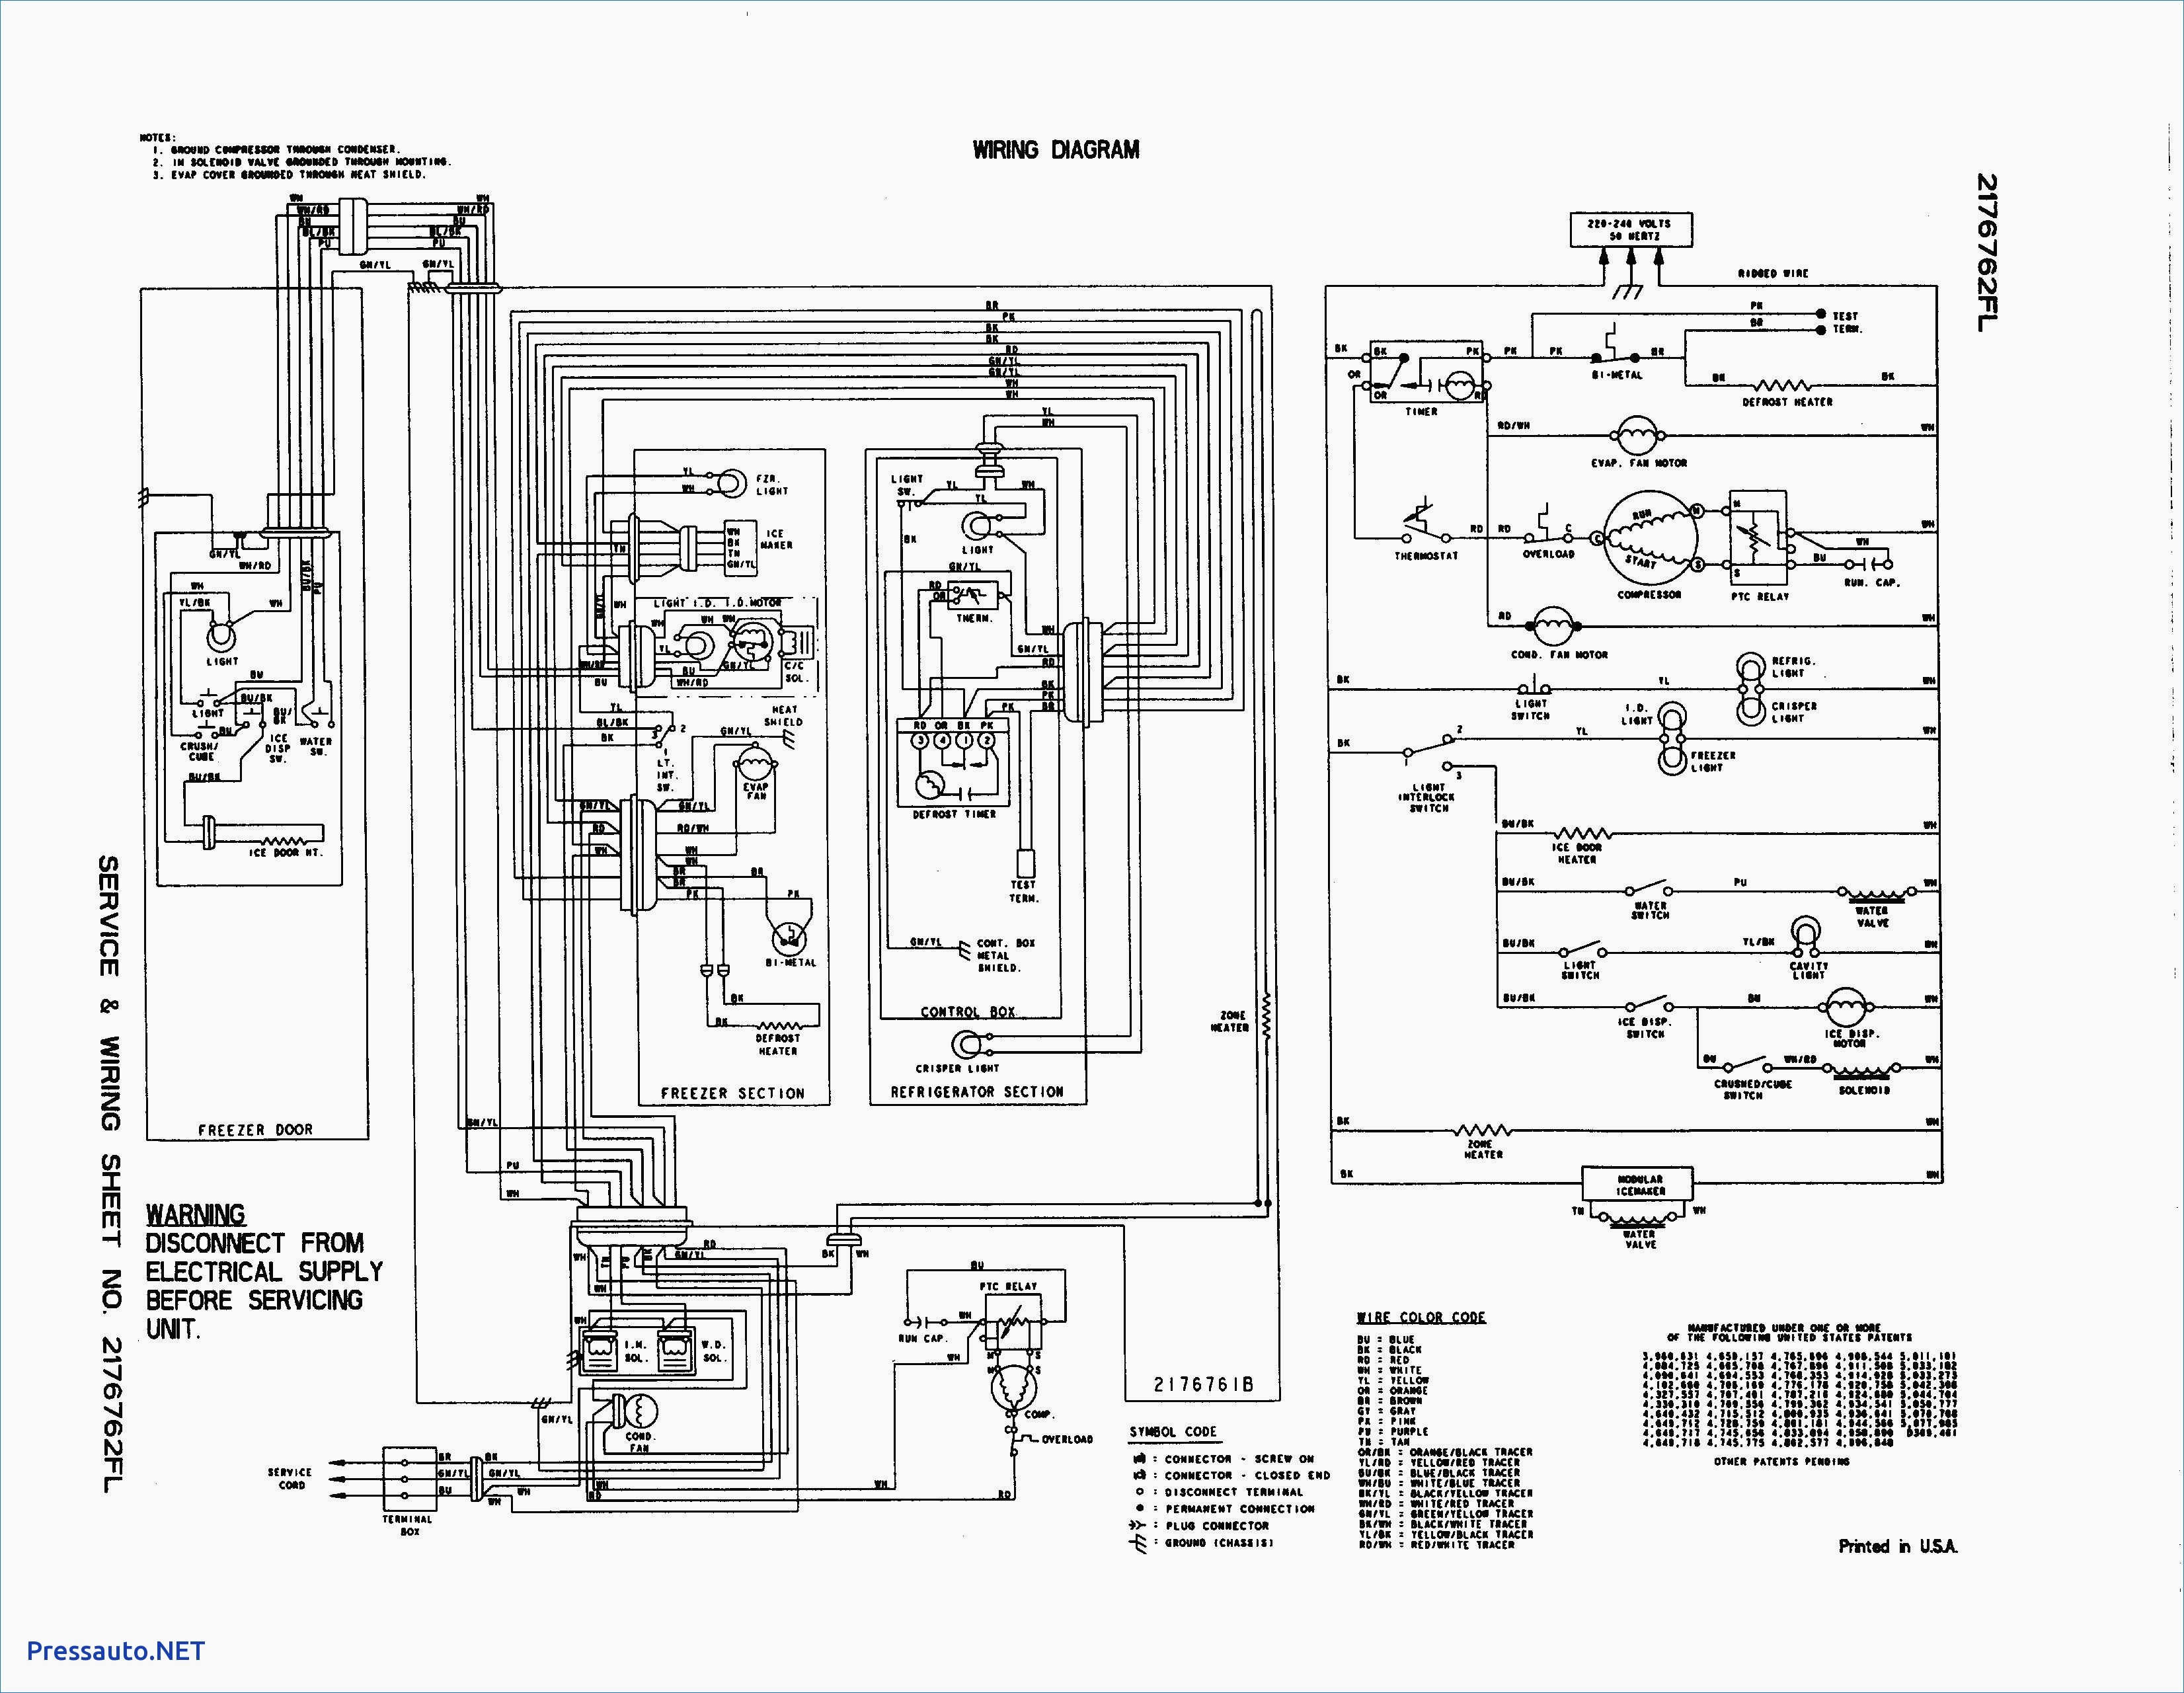 whirlpool electric dryer wiring diagram Collection-Wiring Diagram For Whirlpool Free Download Inside Dryer 2-n